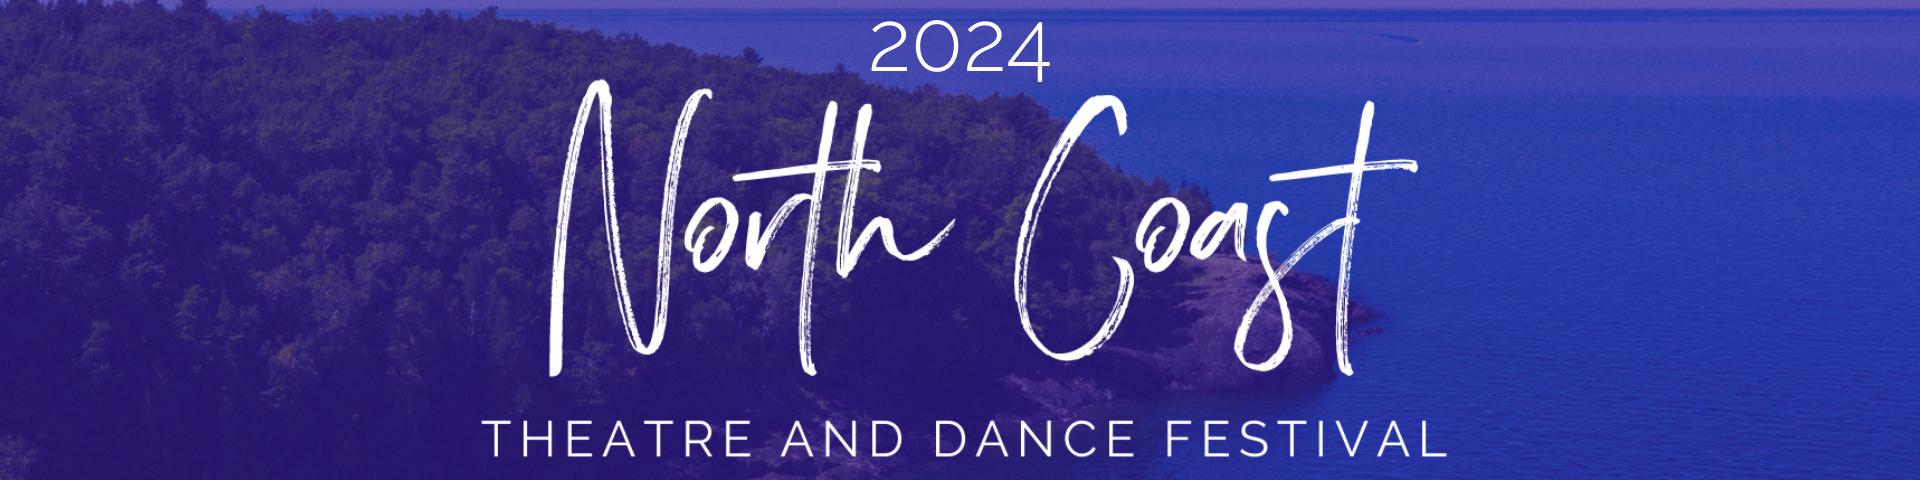 North Coast Theatre and Dance Festival 2024